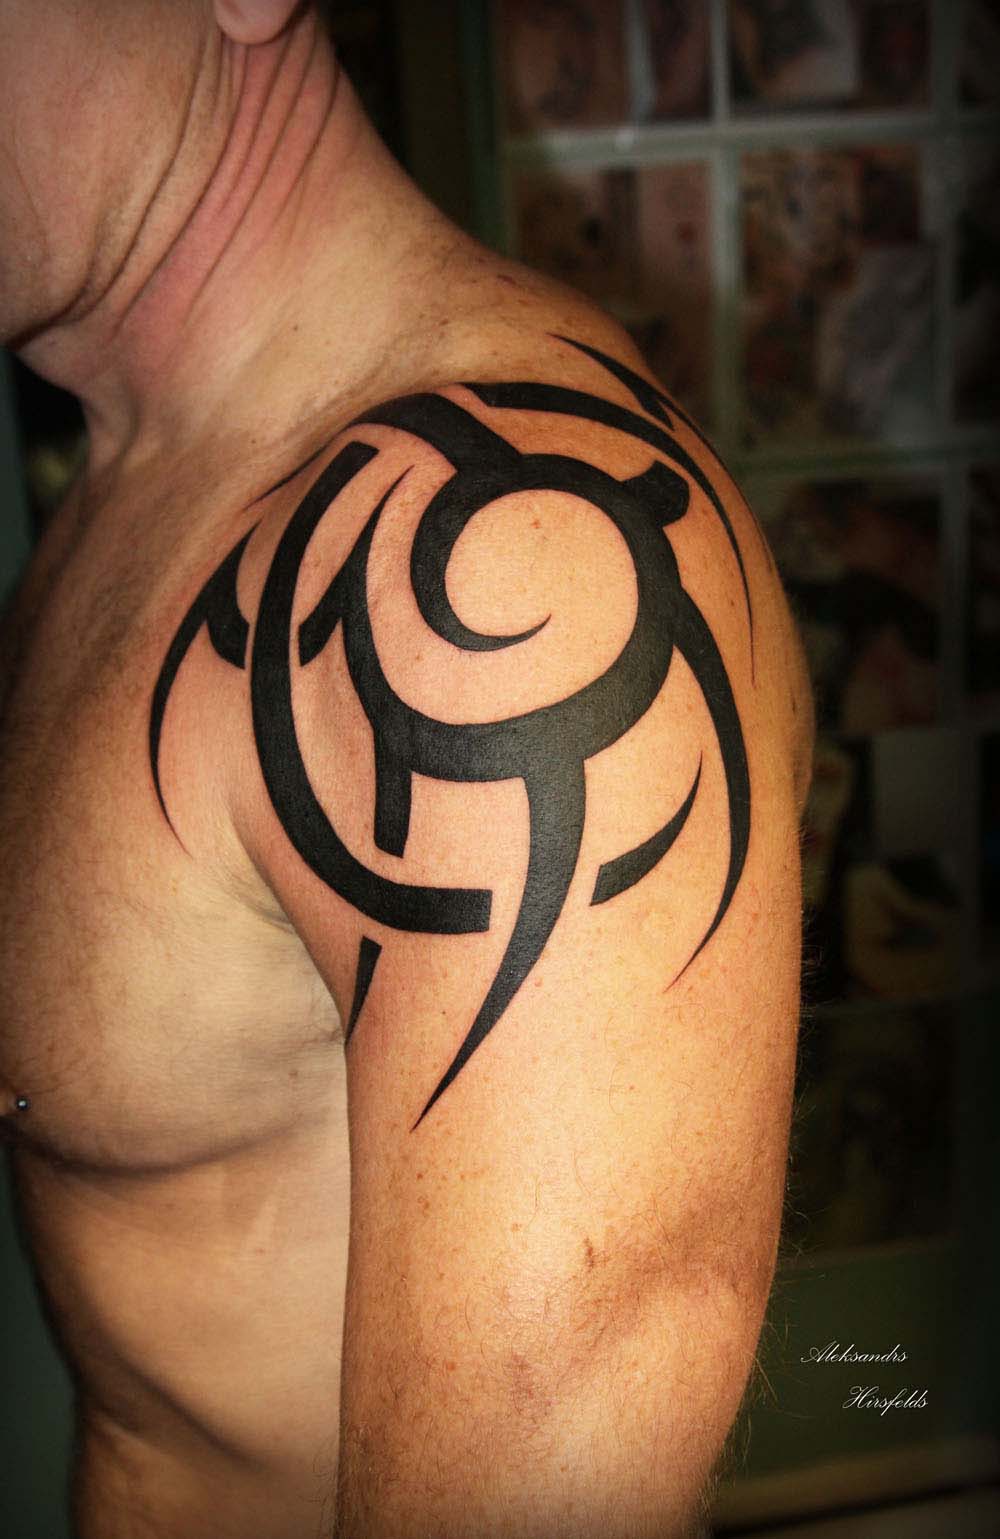 Tribal Shoulder Tattoos for Men